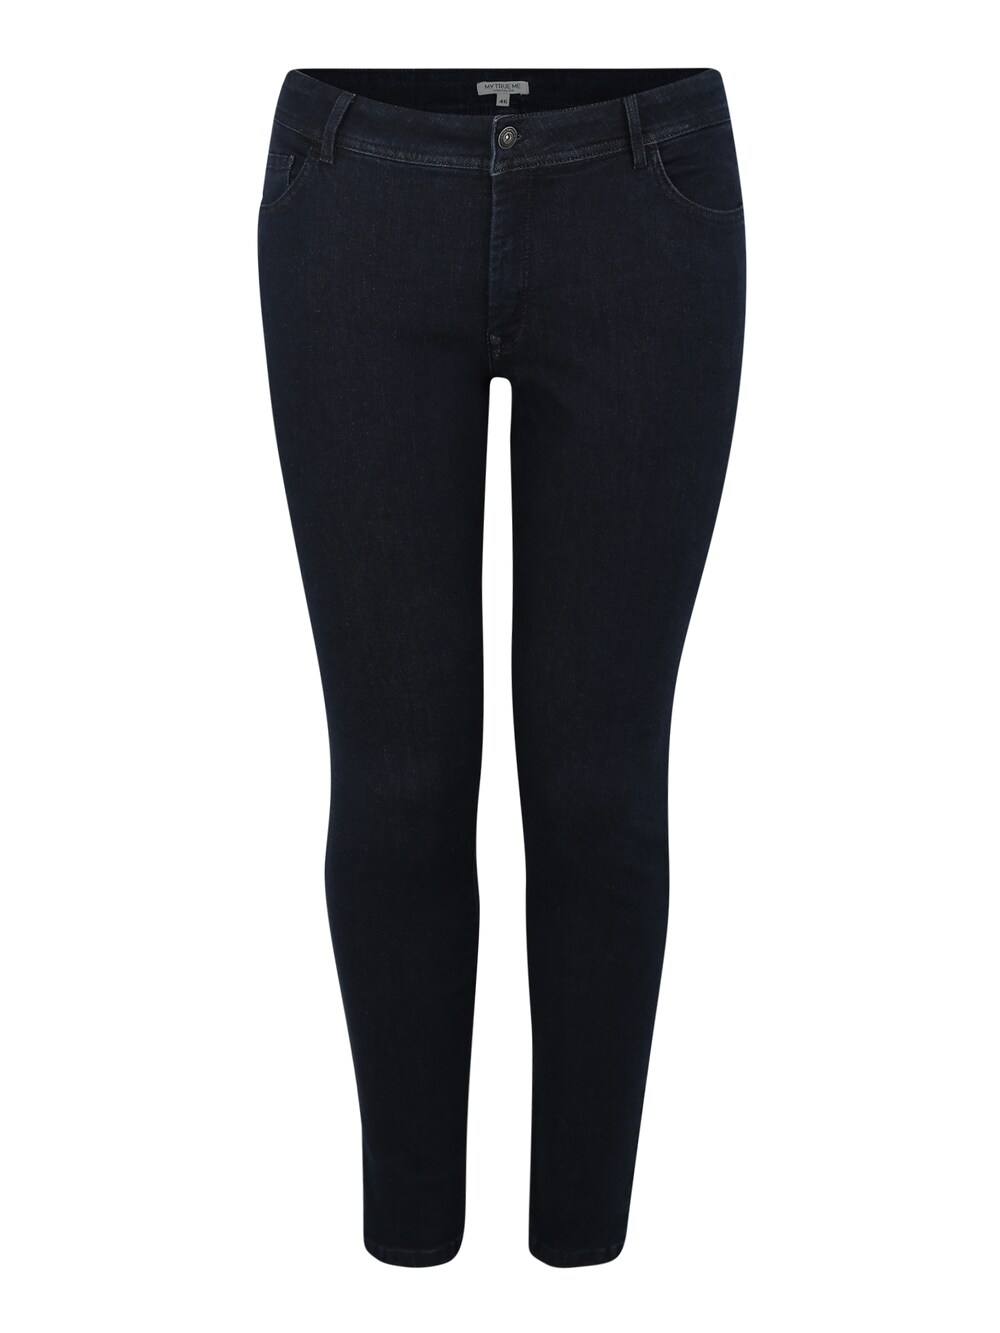 Узкие джинсы Tom Tailor Women +, темно-синий футболка tom tailor 1016496 10668 женская цвет тёмно синий размер s